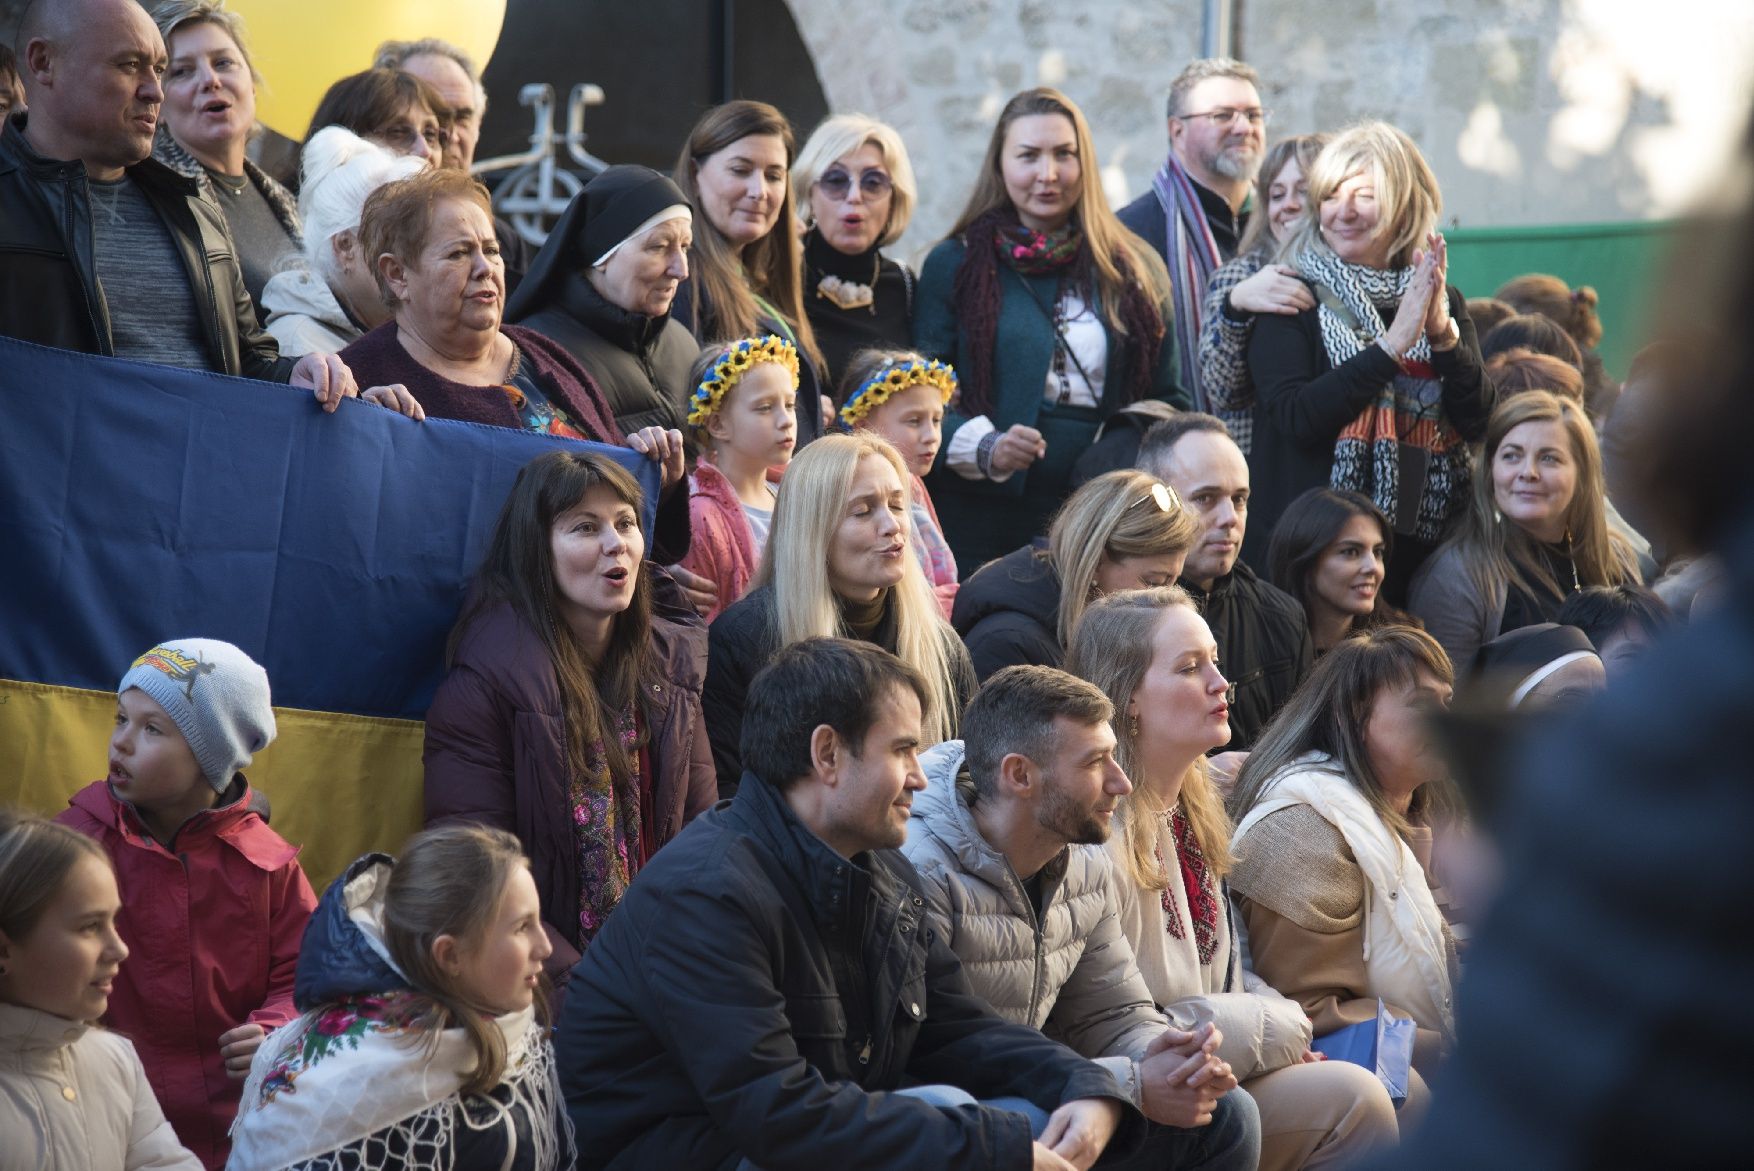 Les imatges de la celebració de centenars d'ucraïnesos al convent de Santa Clara